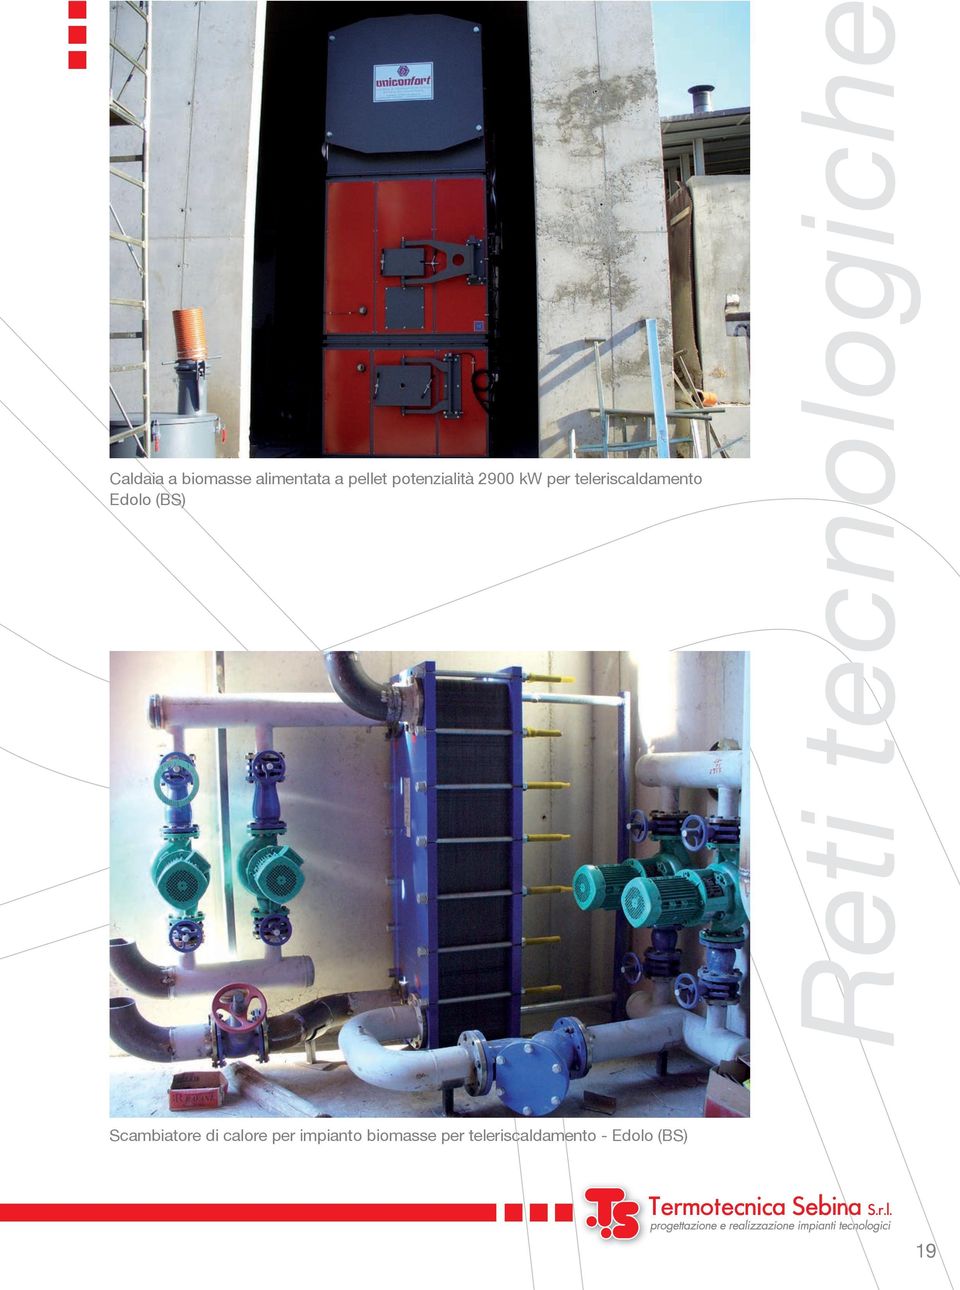 Edolo (BS) Scambiatore di calore per impianto